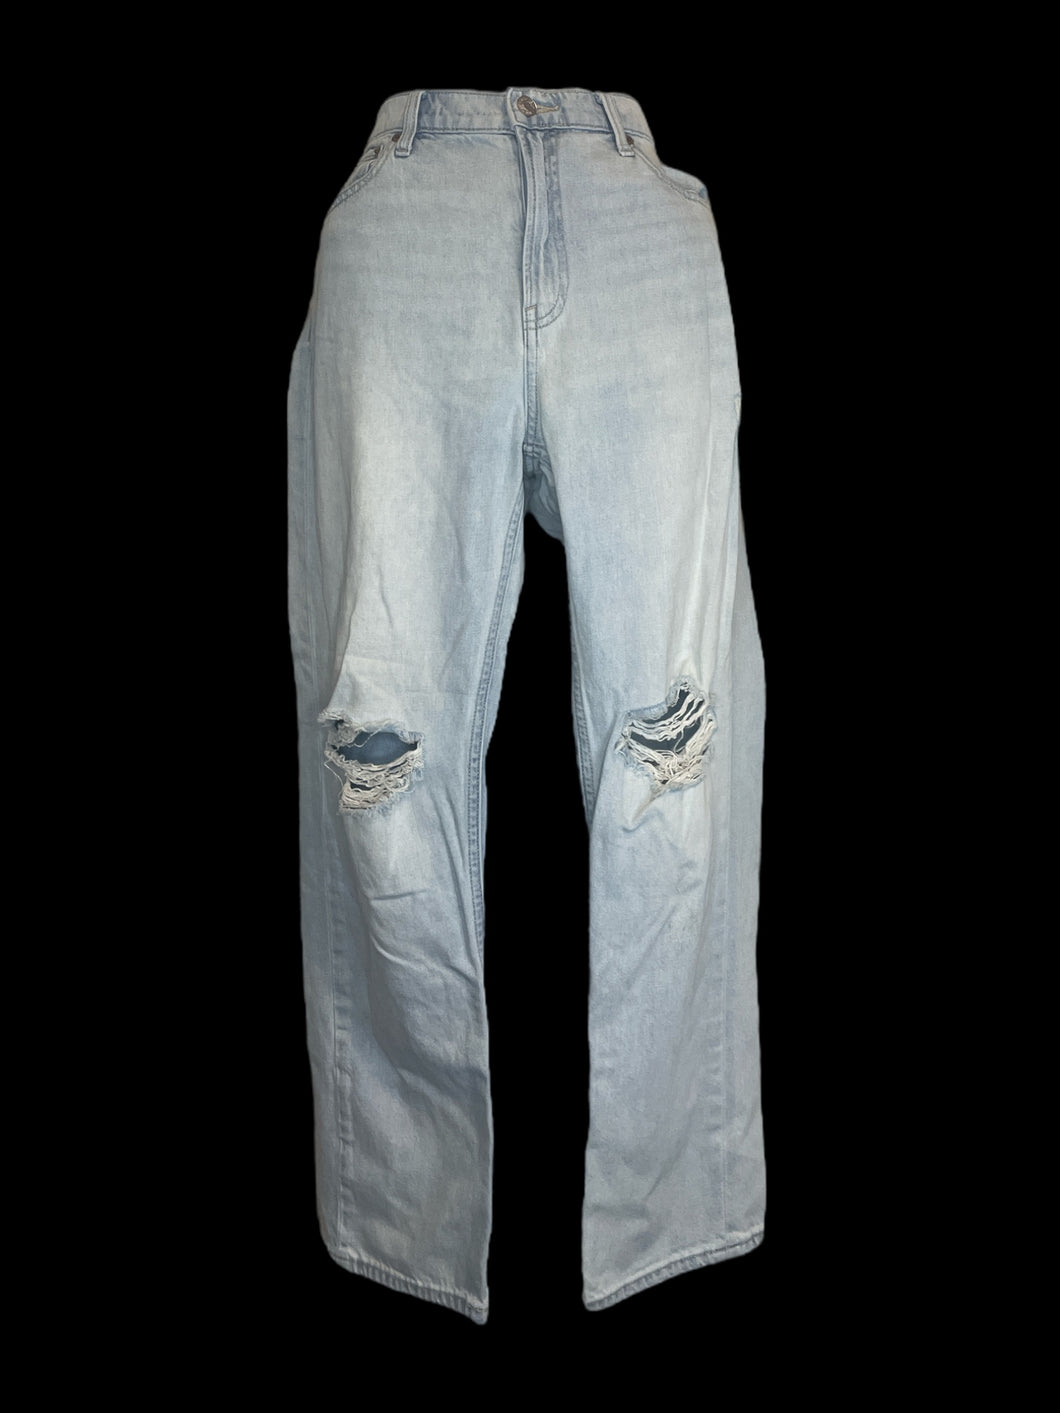 L Light blue distressed denim jeans w/ pockets, belt loops, & zipper/button closure